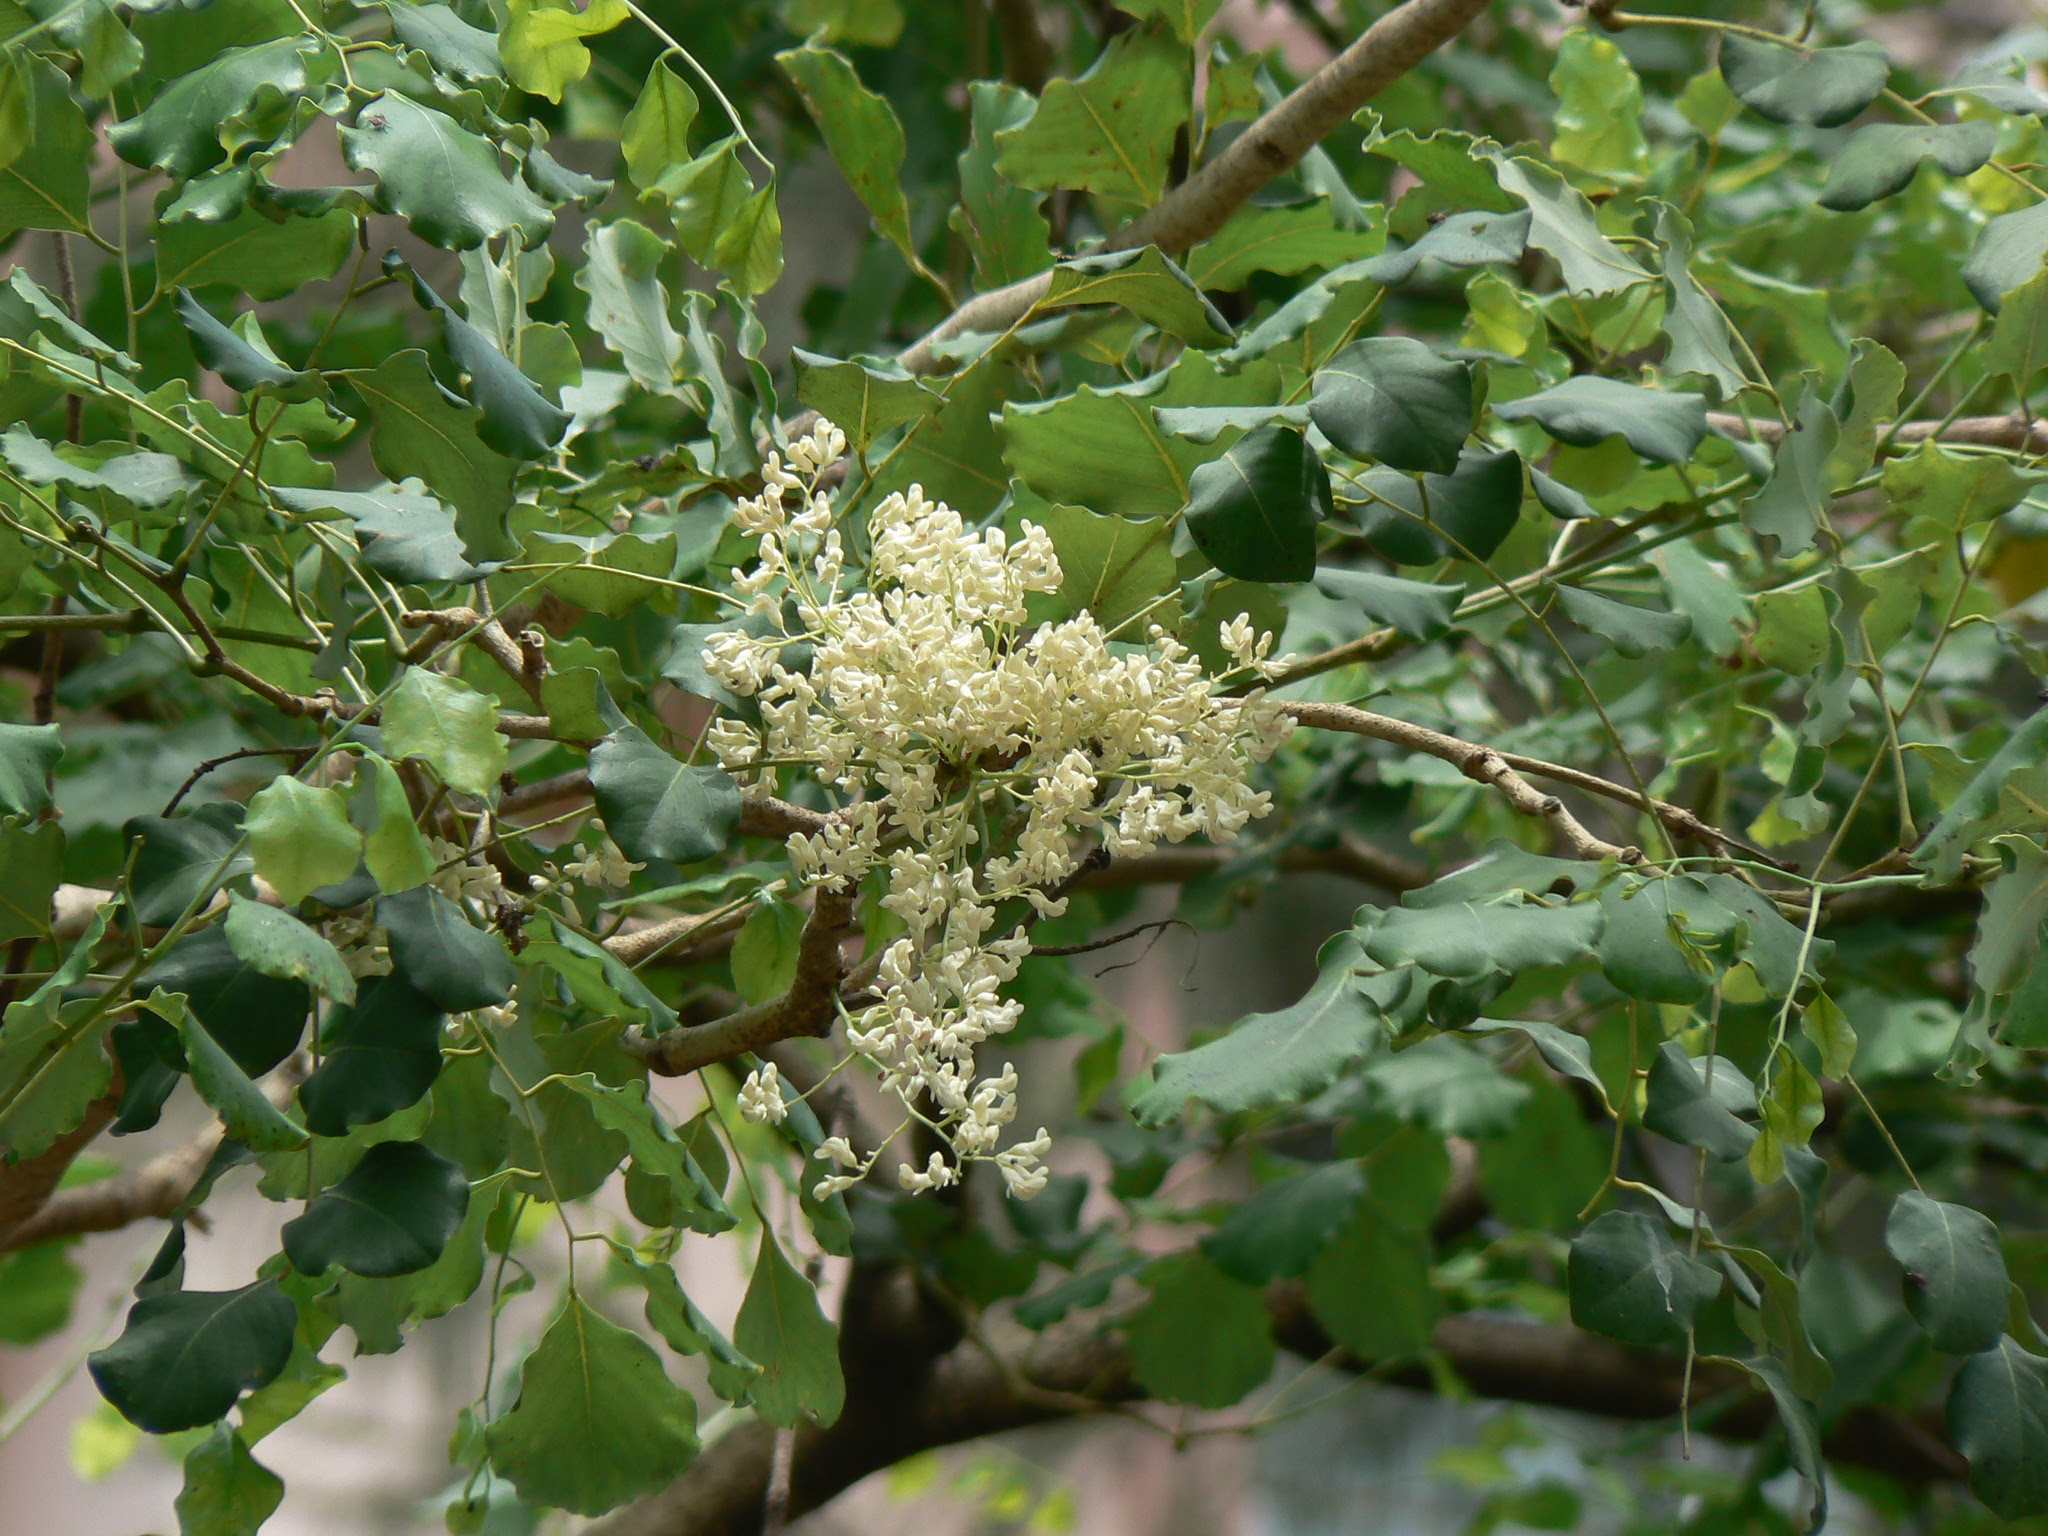 Dalbergia latifolia Roxb.